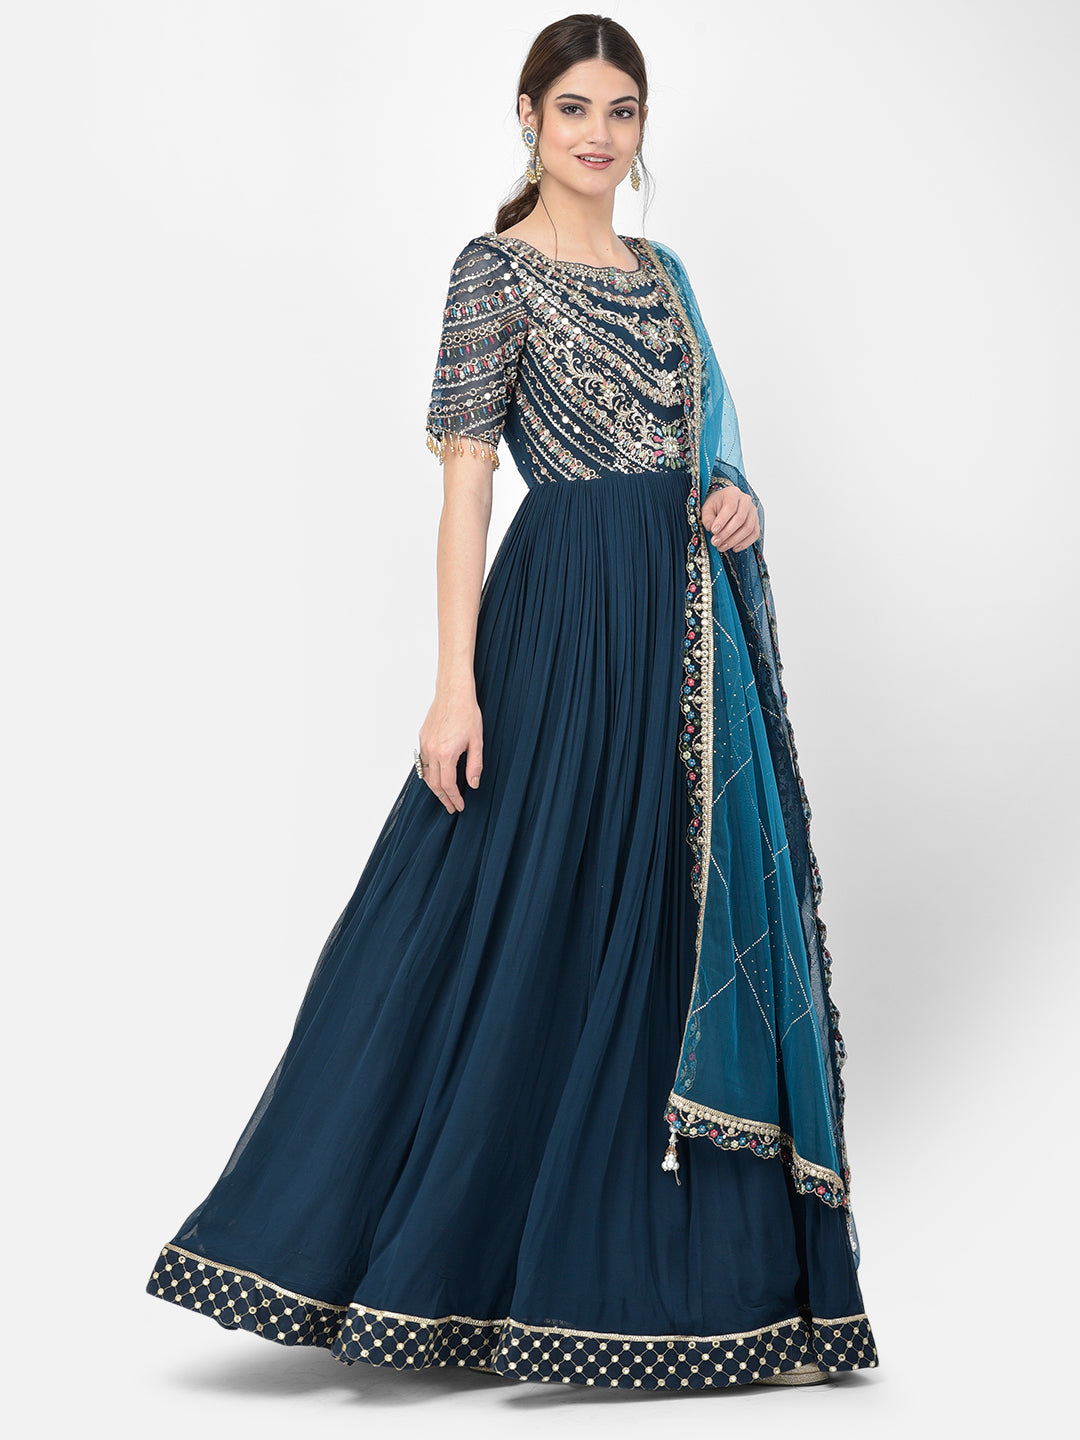 Neeru's peacock color georgette fabric salwar kameez